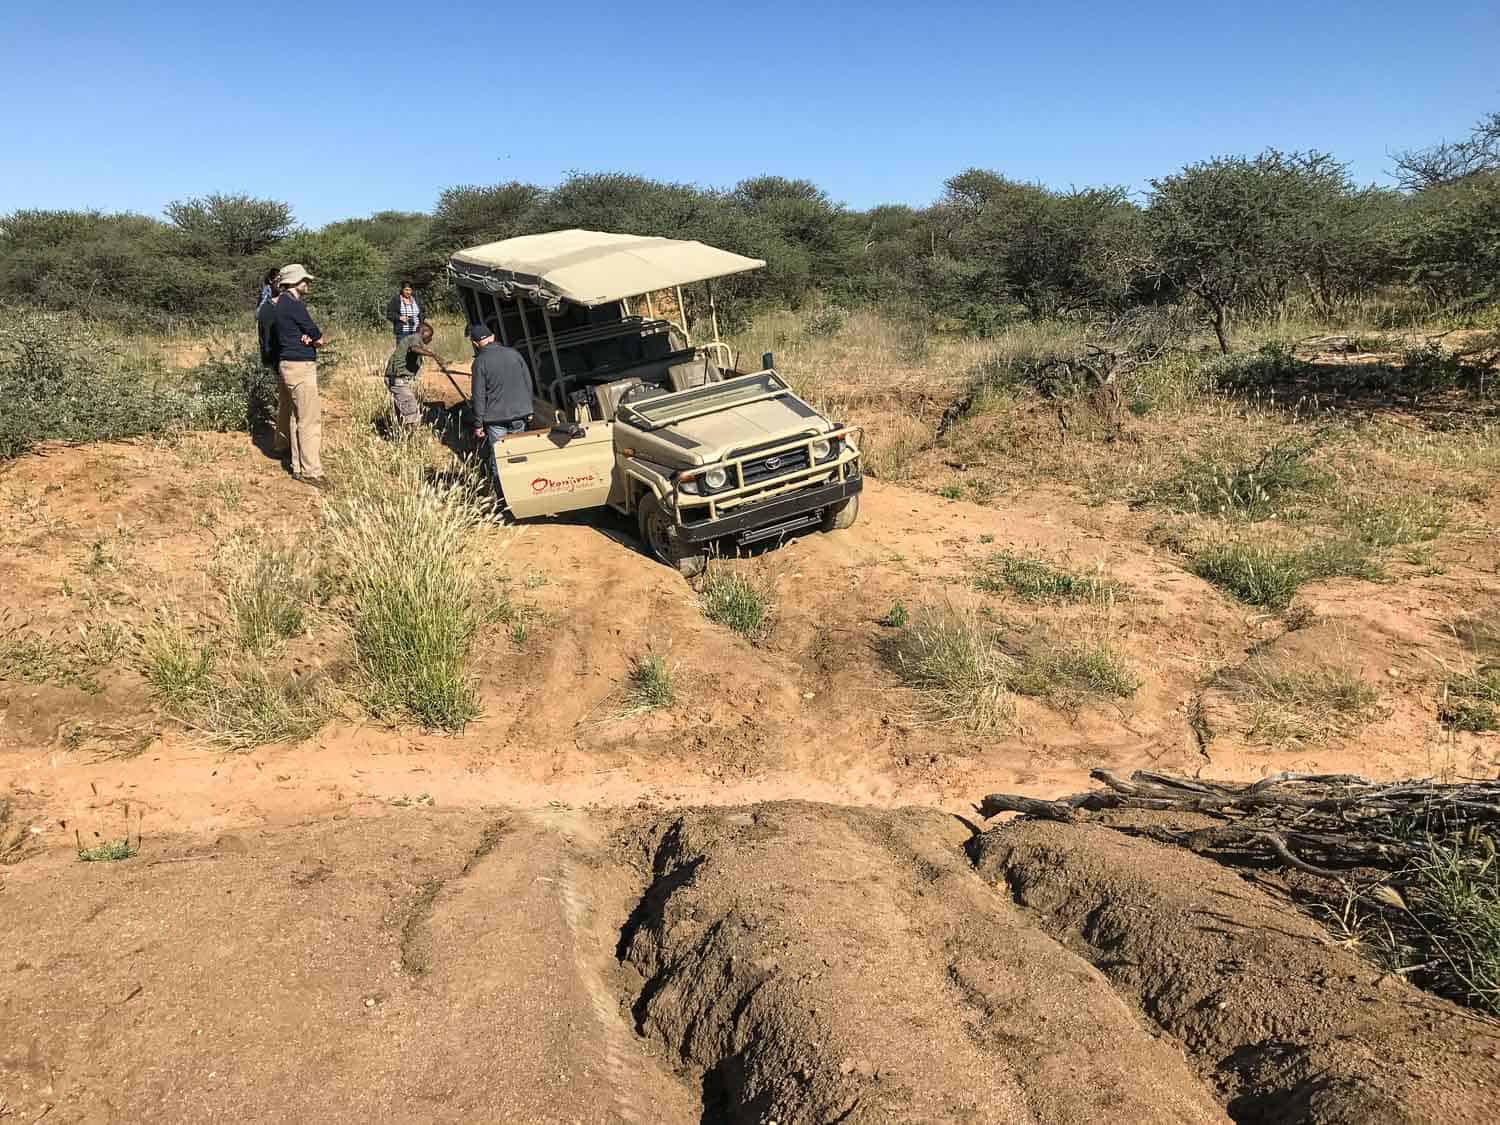 4WD getting stuck in Okonjima